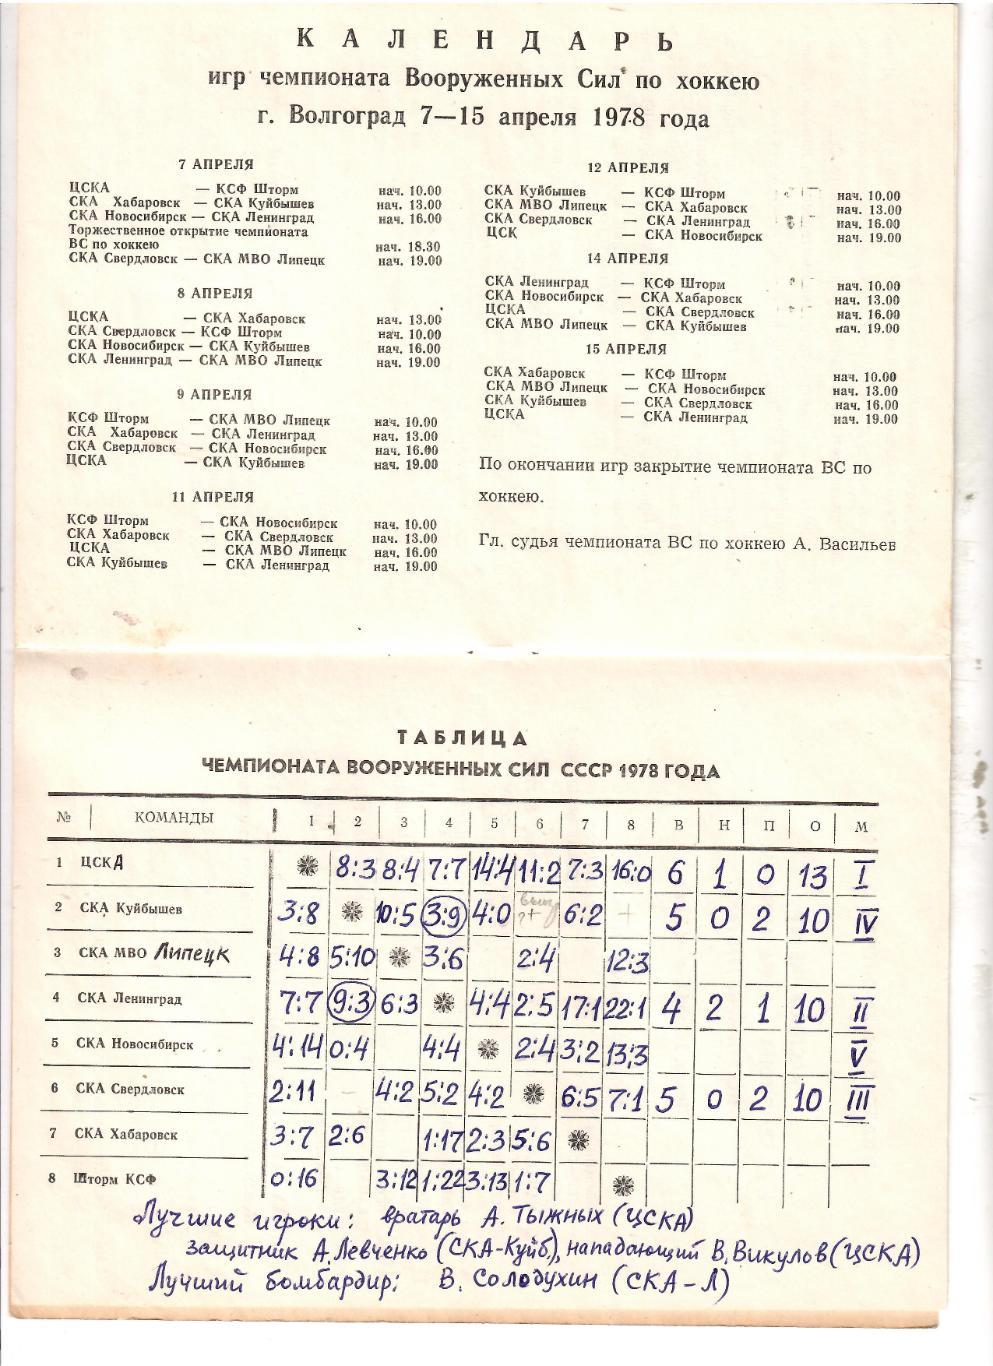 1978 Хоккей Турнир ЦСКА - СКА Ленинград - Хабаровск - Новосибирск - Куйбышев... 1